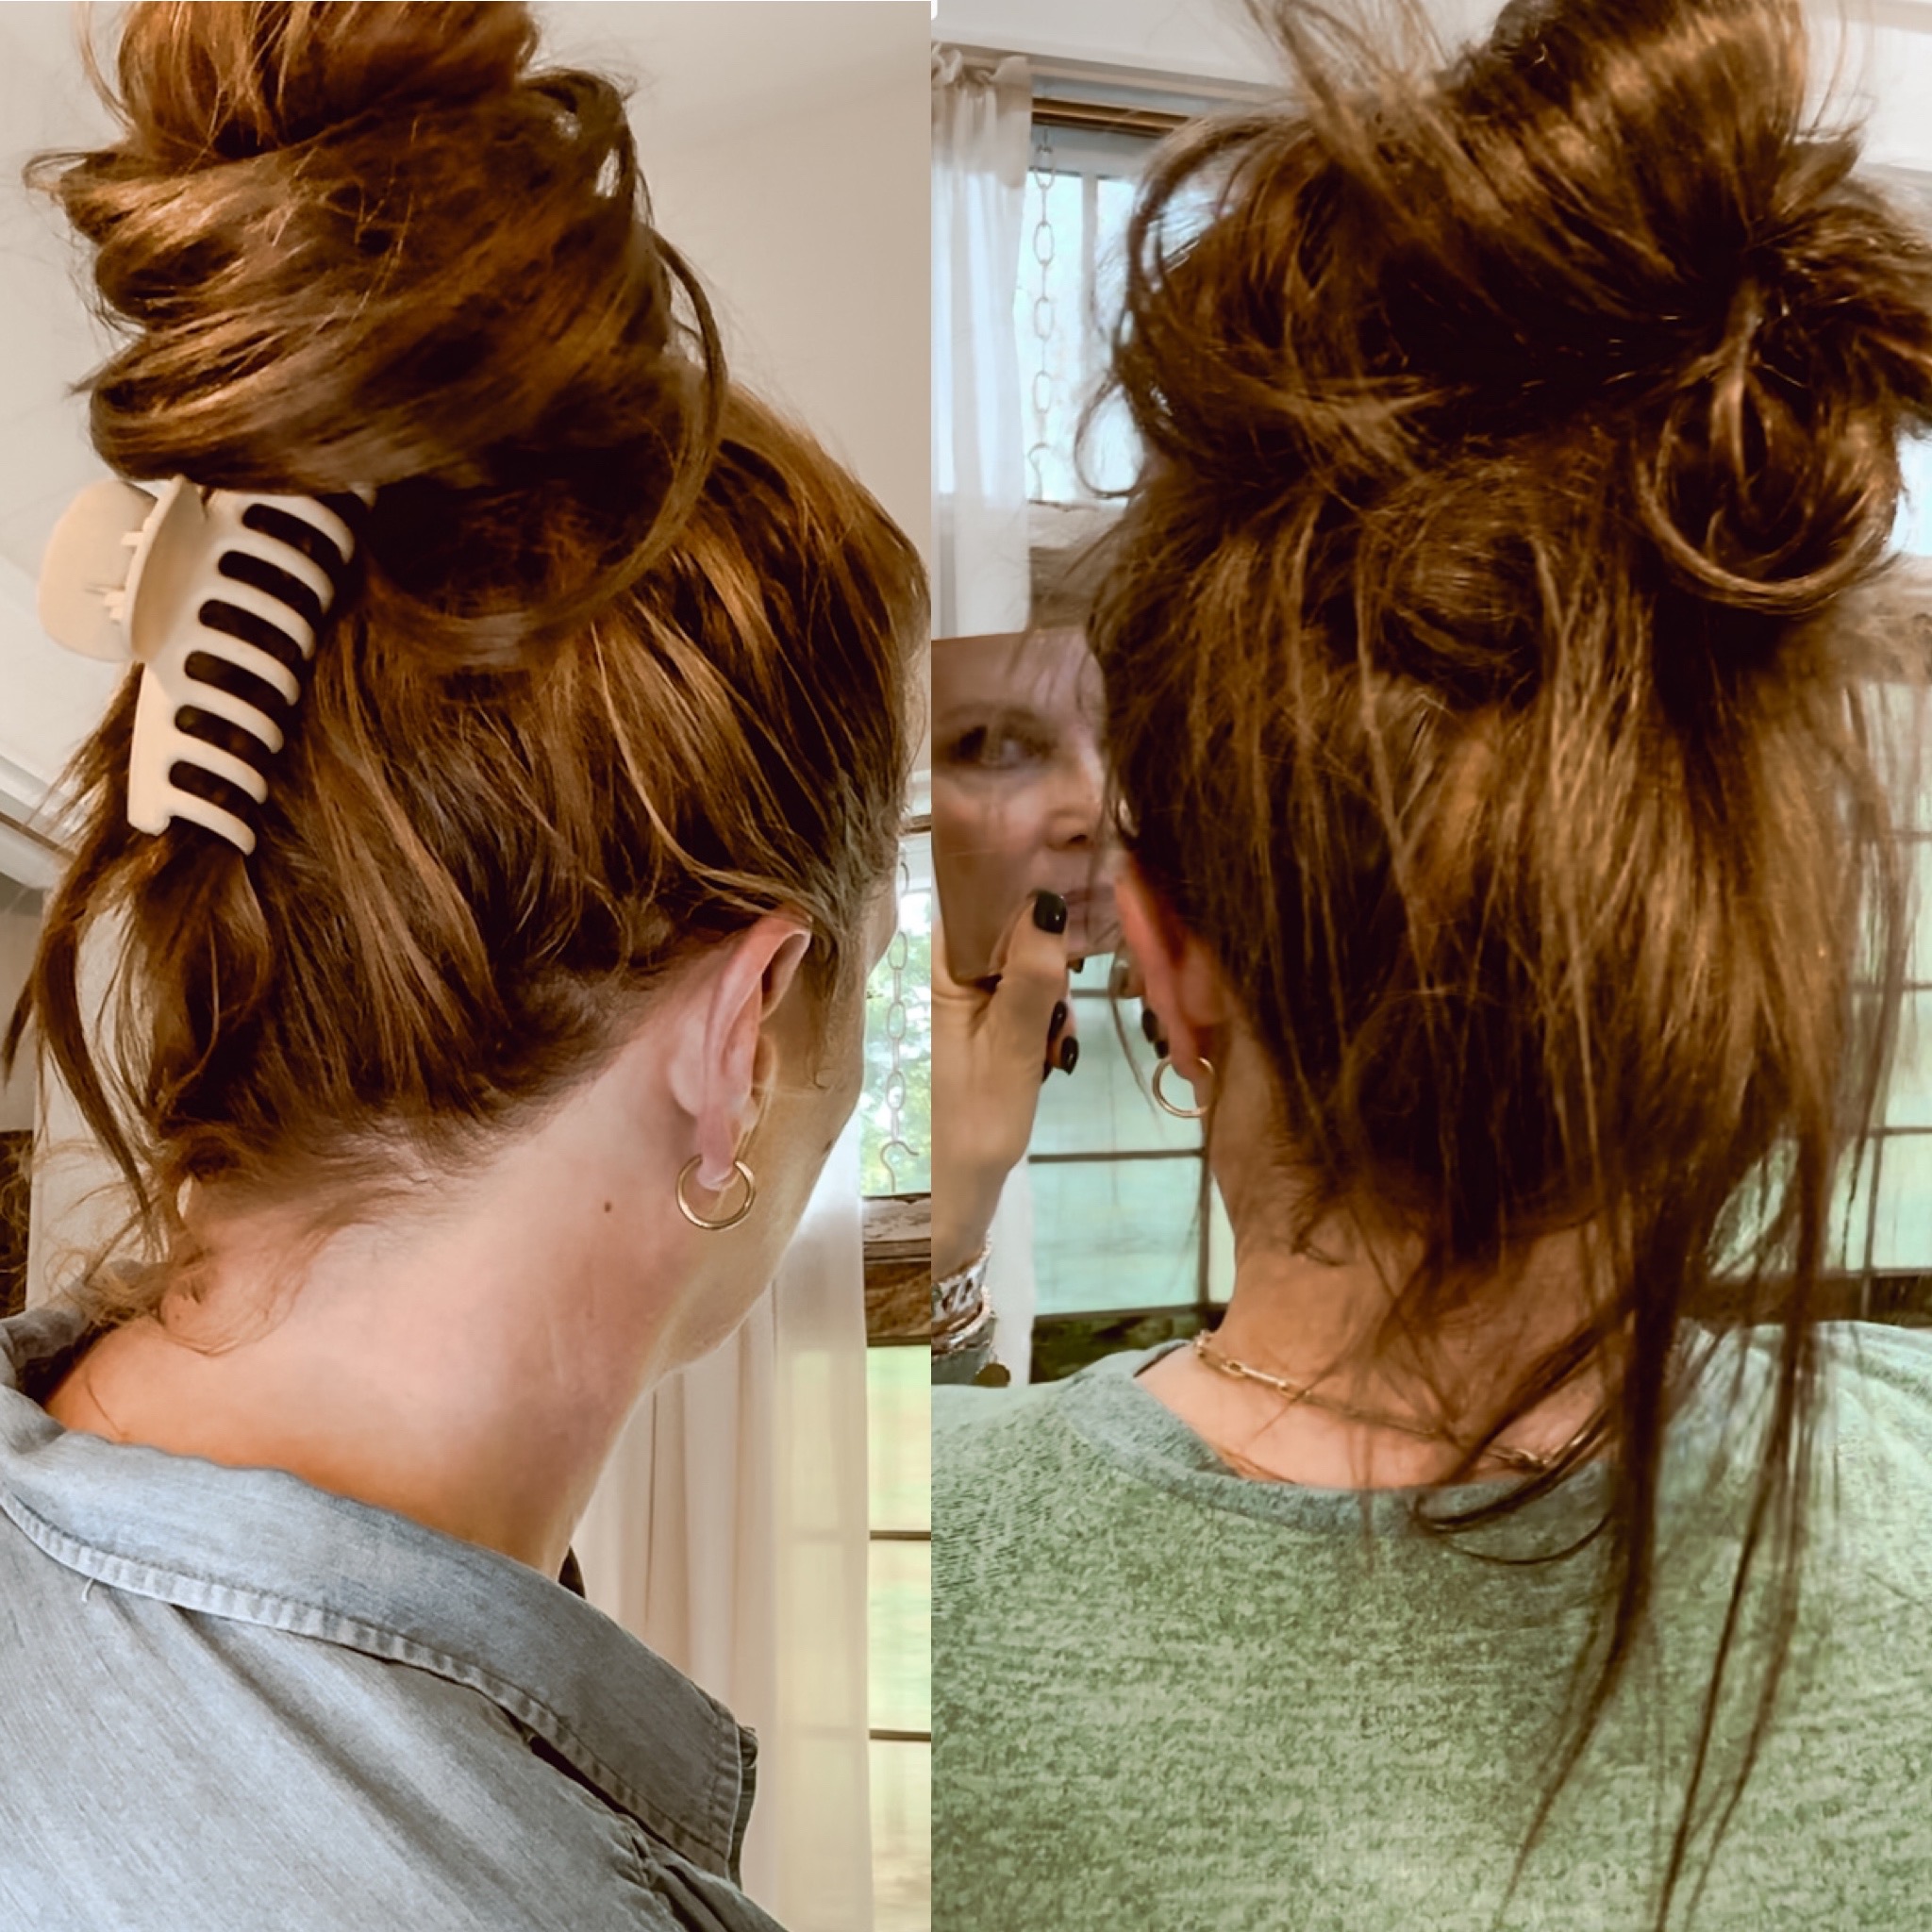 Fake ponytail hairstyle